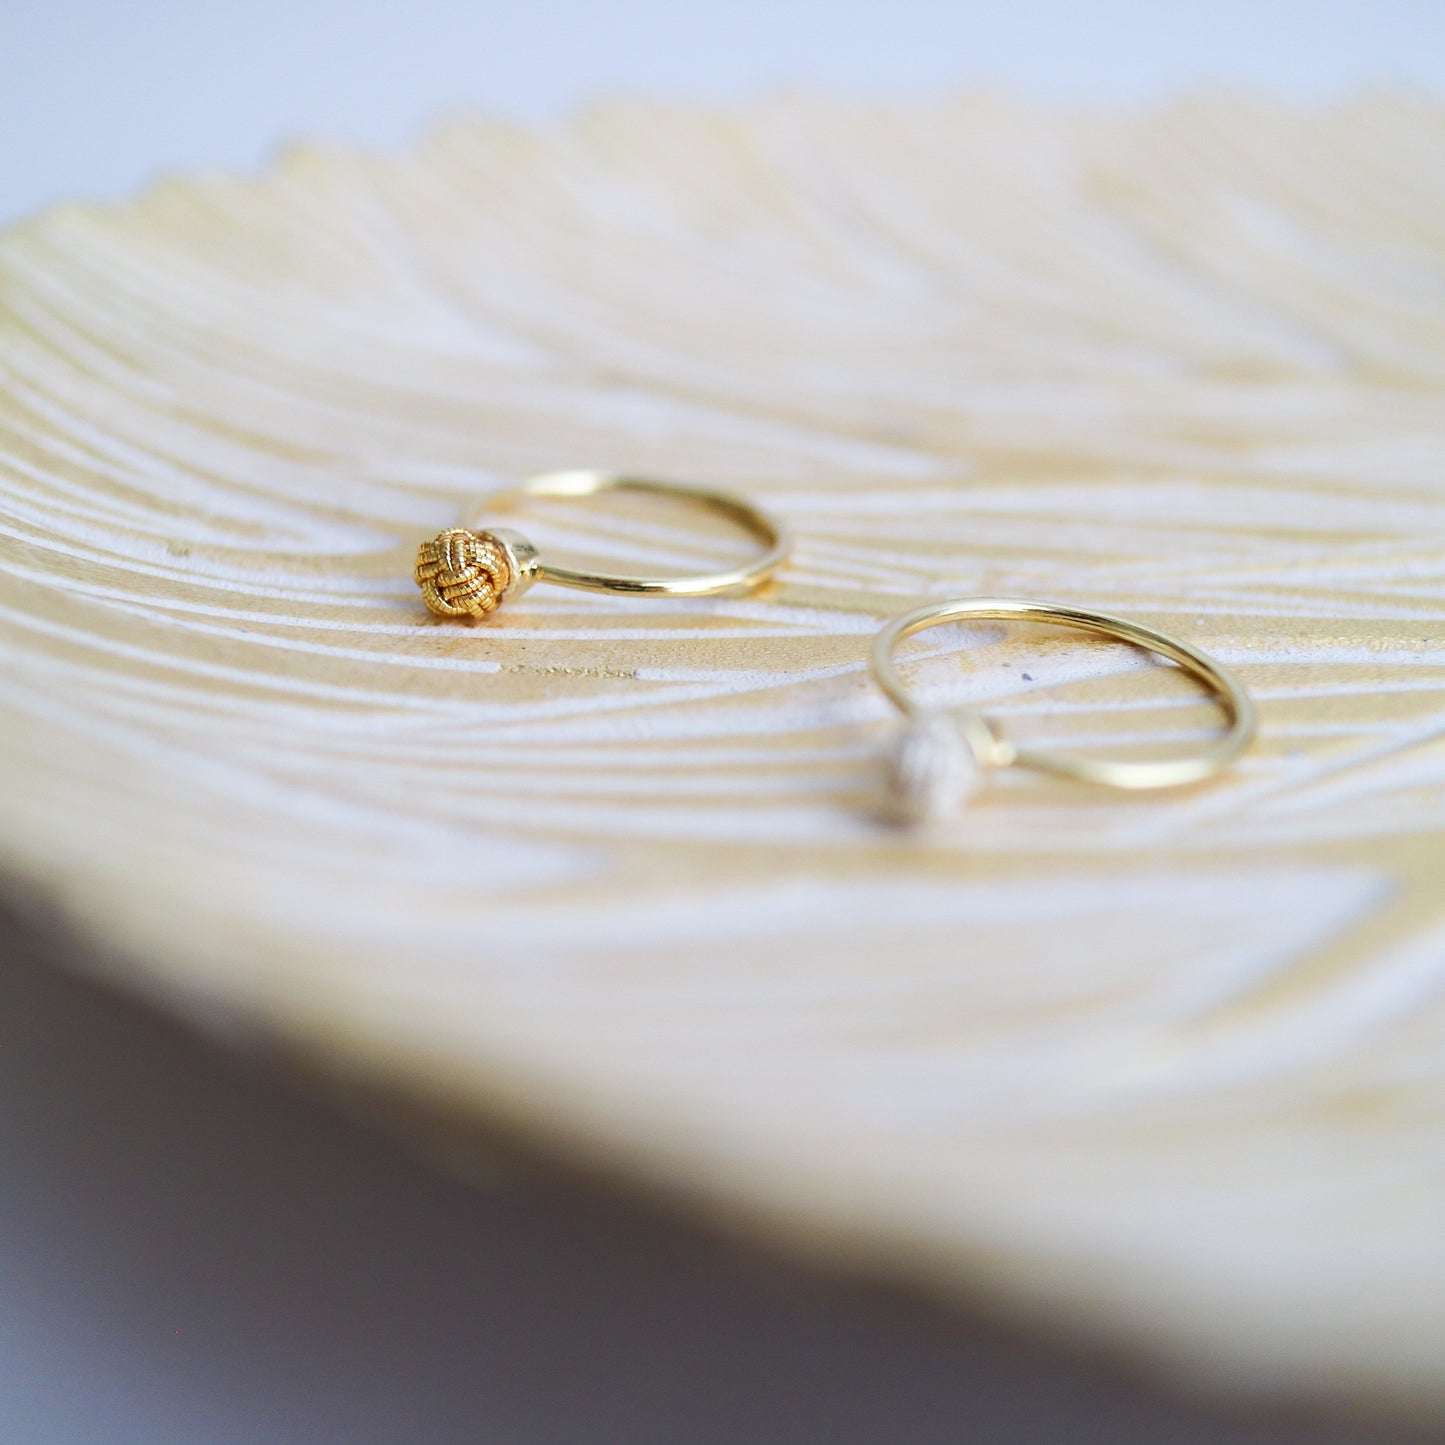 Awaji single pearl ring